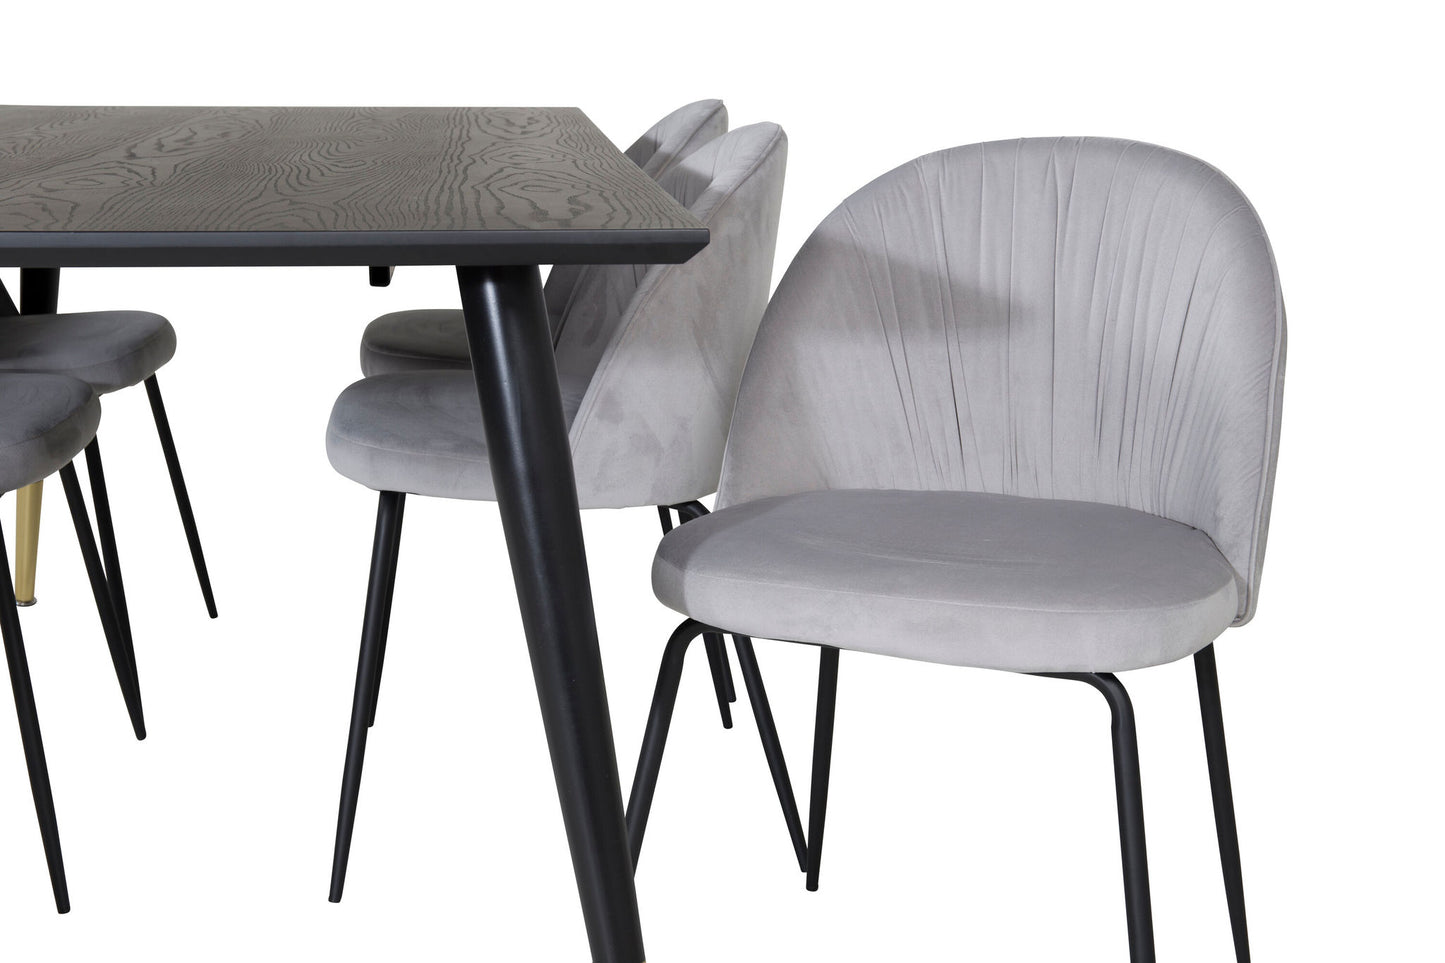 Dipp - Spisebord, 180*90cm - Sort Messing+Wrikles Spisebordsstol - Sorte ben - Grå velour